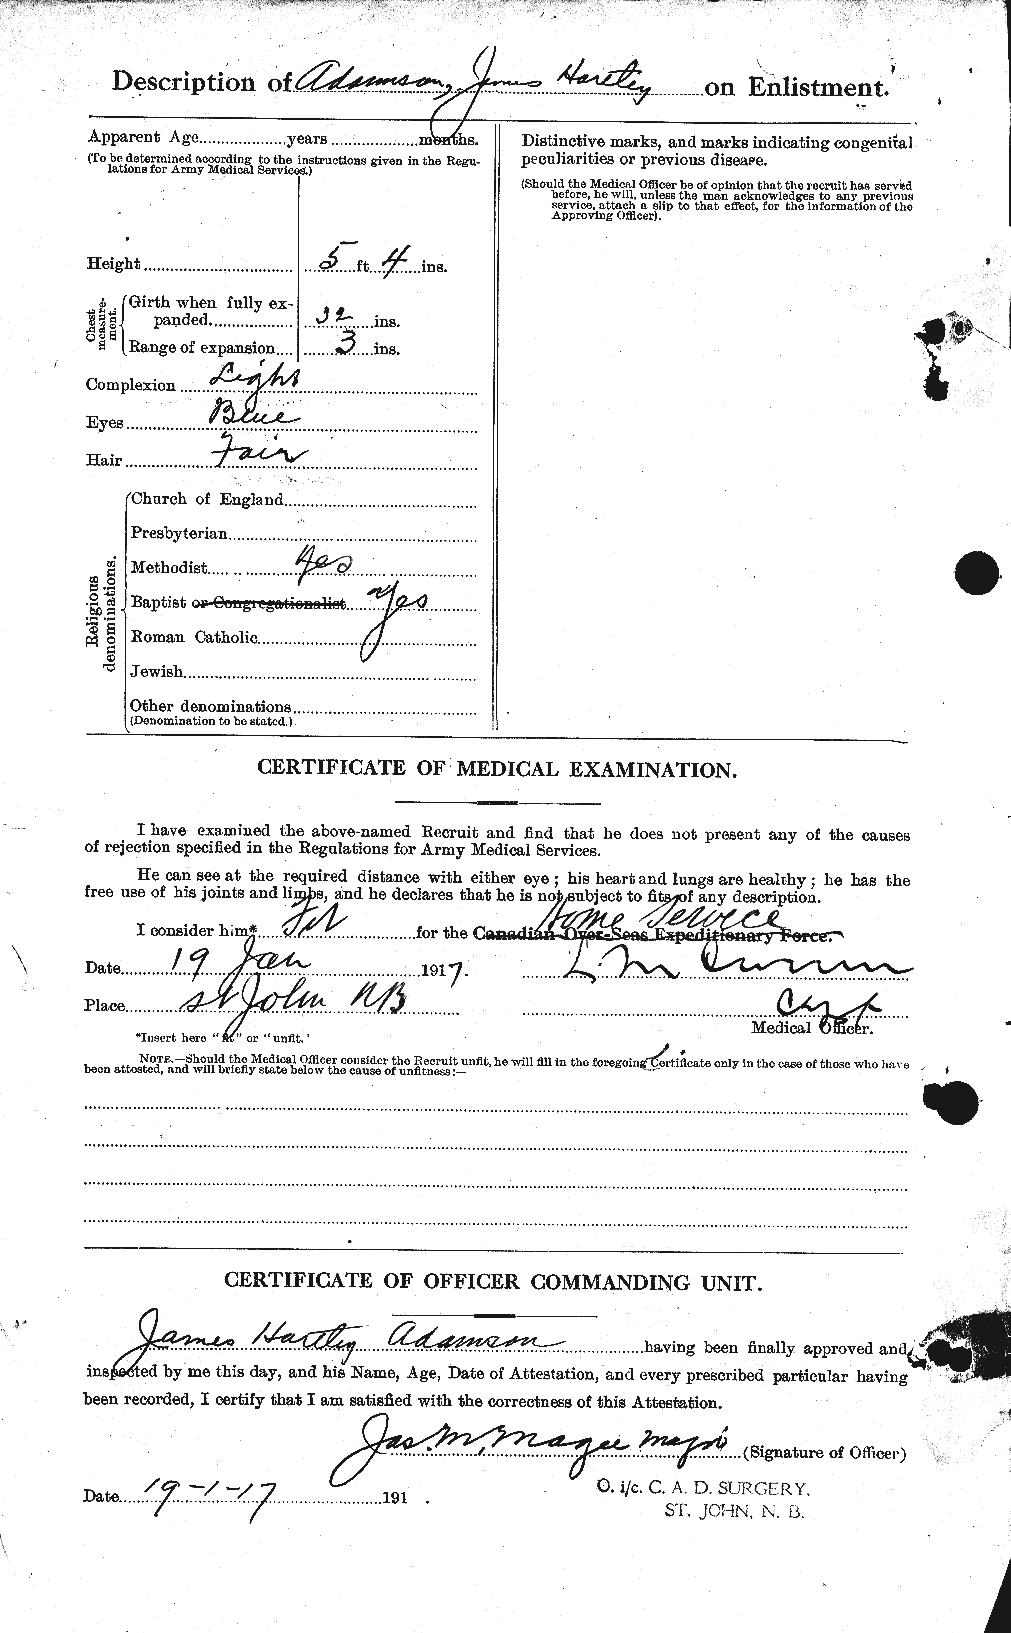 Dossiers du Personnel de la Première Guerre mondiale - CEC 202366b